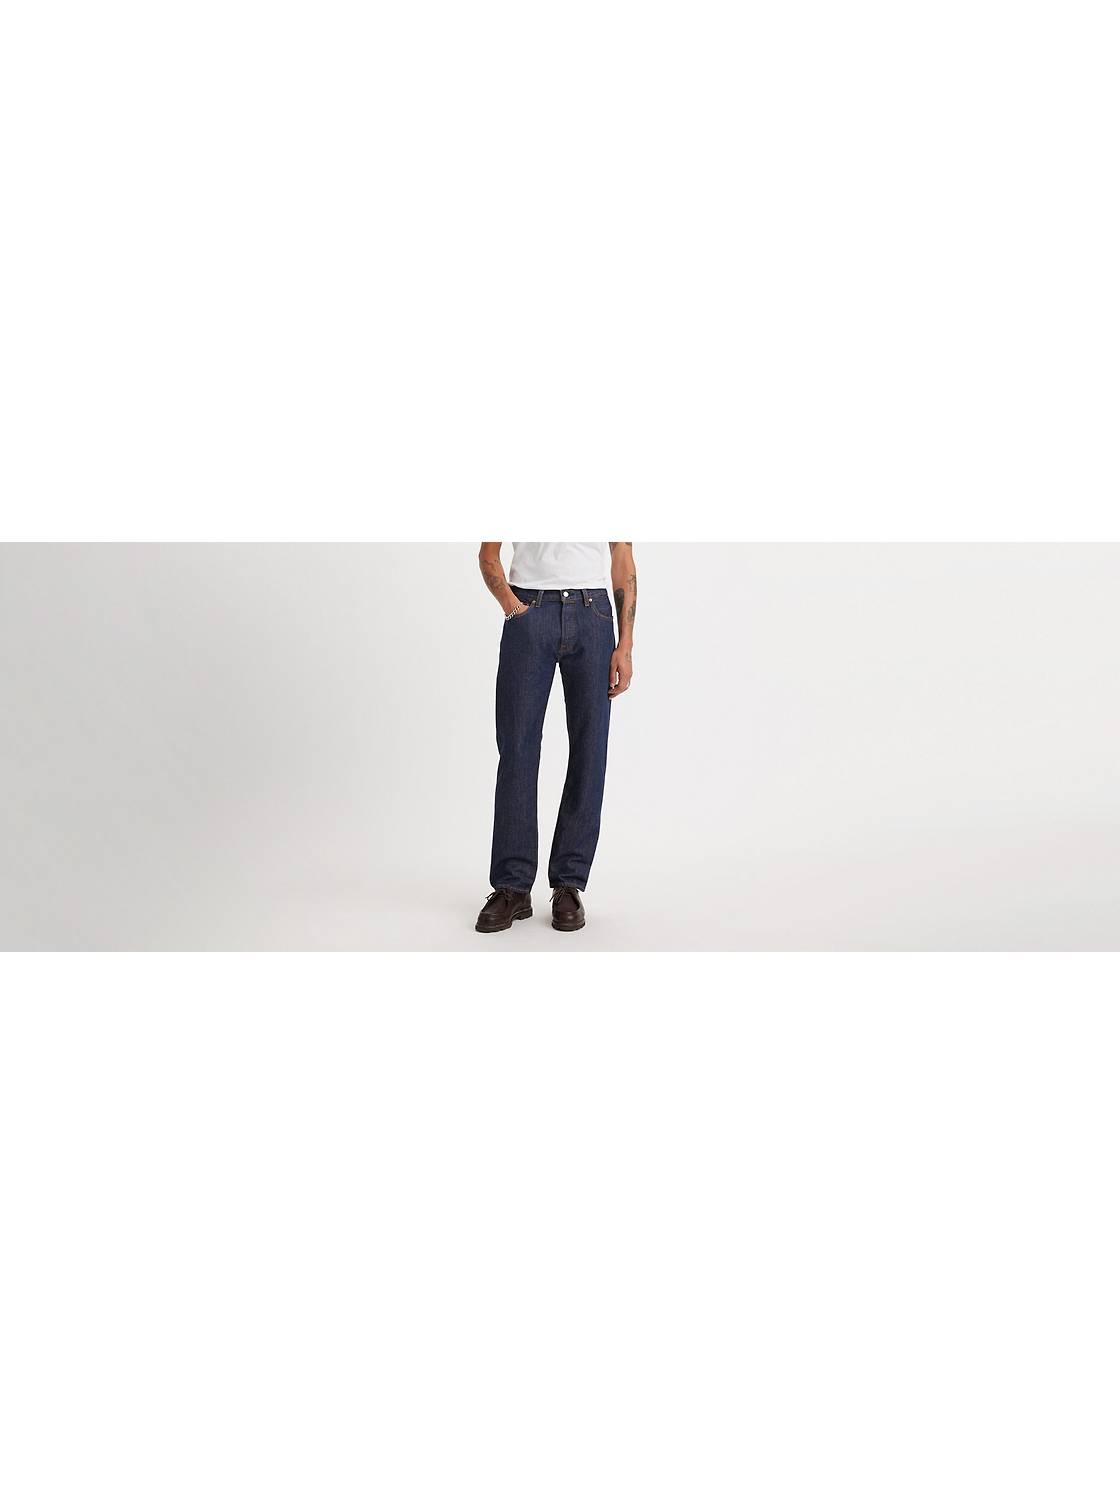 Men's Jeans: Shop the Best Jeans for | Levi's® US